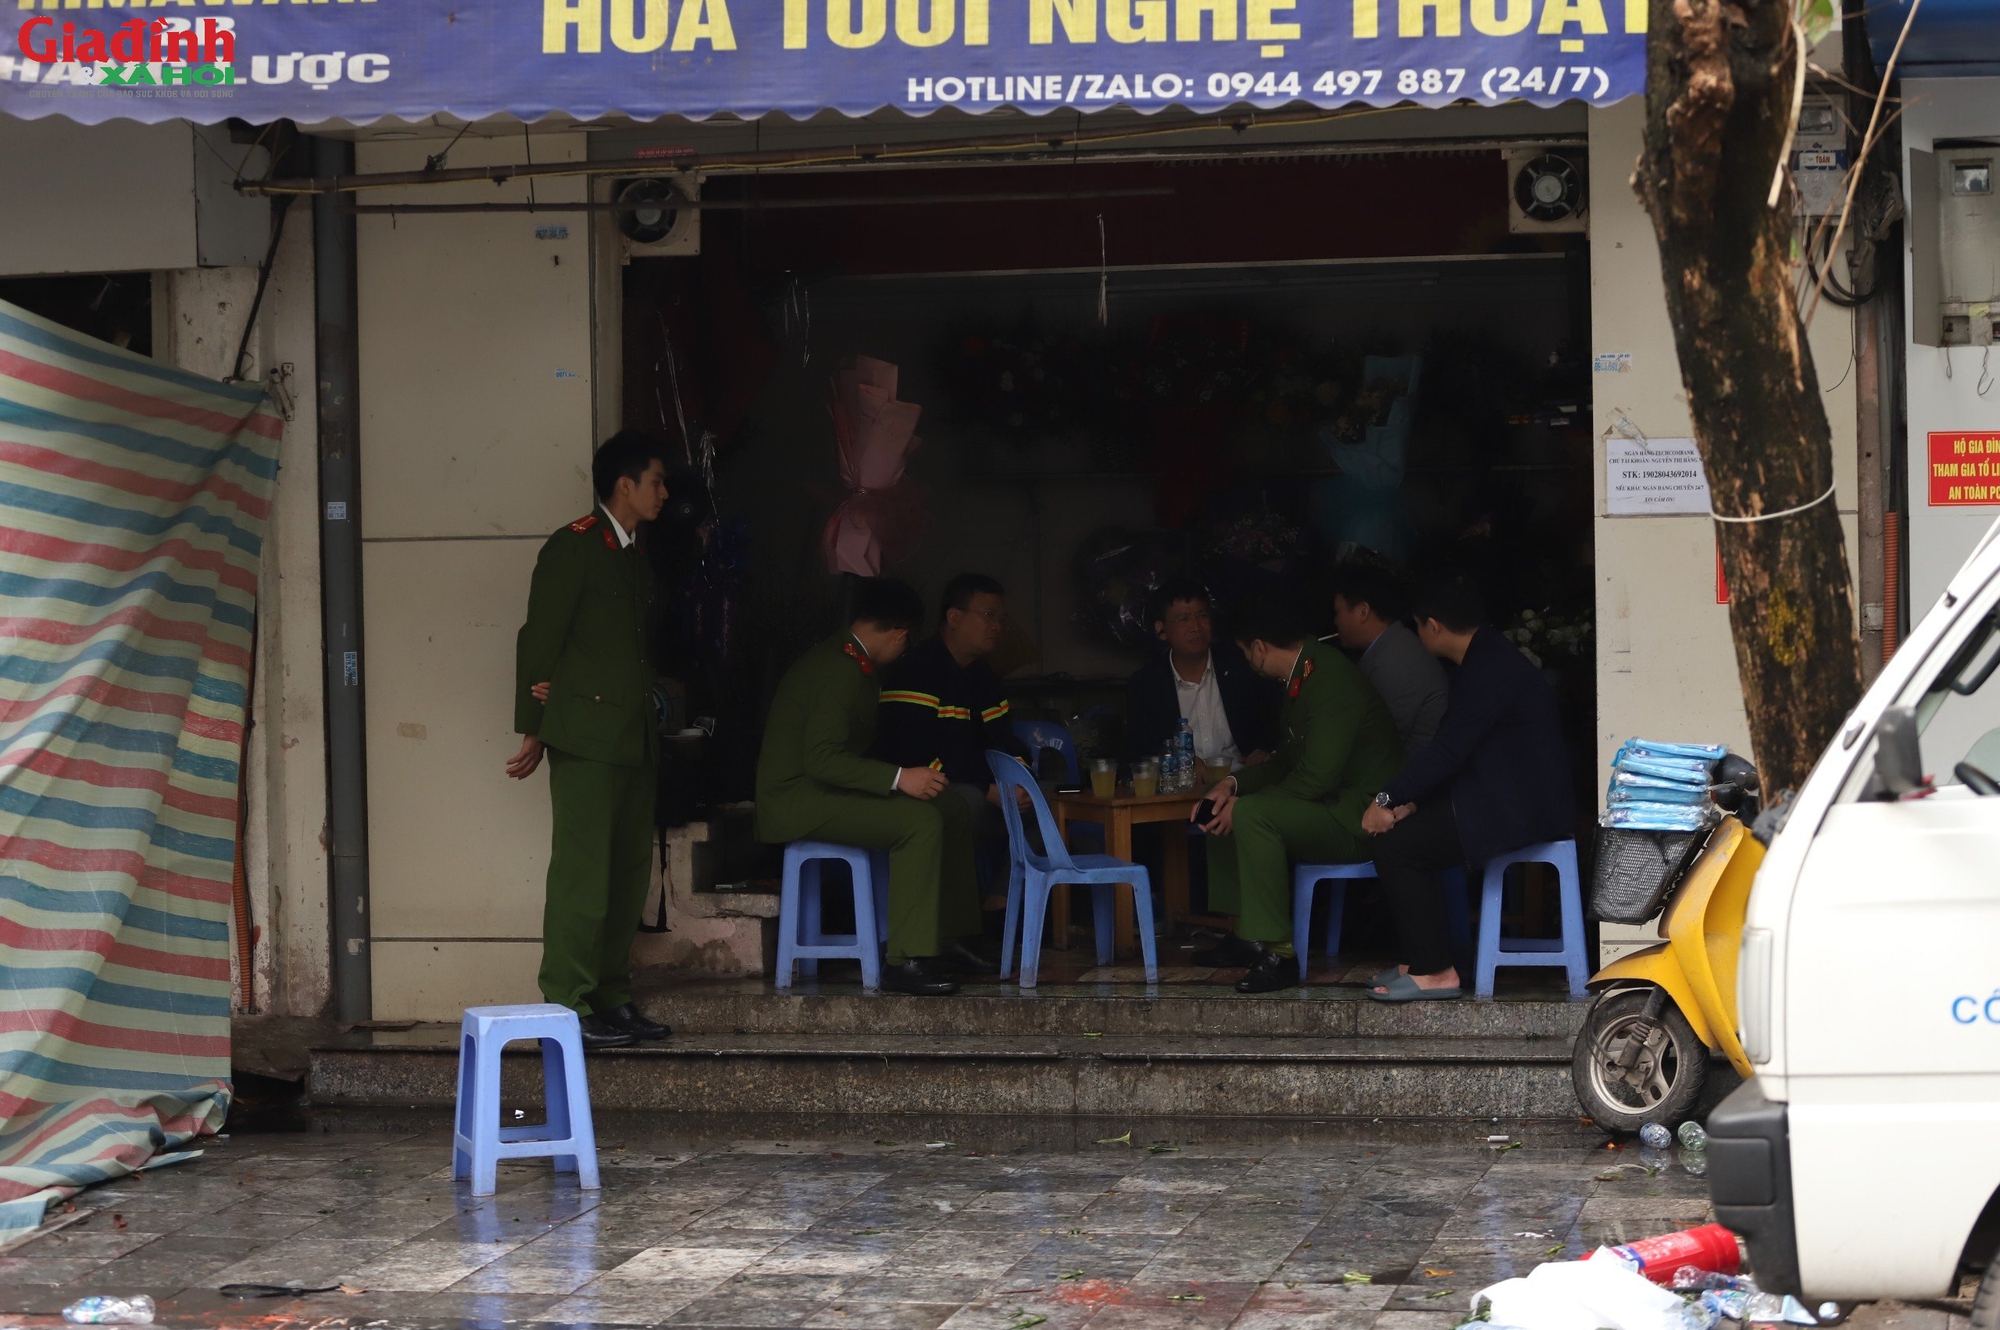 Hiện trường vụ cháy ở phố cổ Hà Nội khiến 4 người trong một gia đình tử vong thương tâm - Ảnh 7.